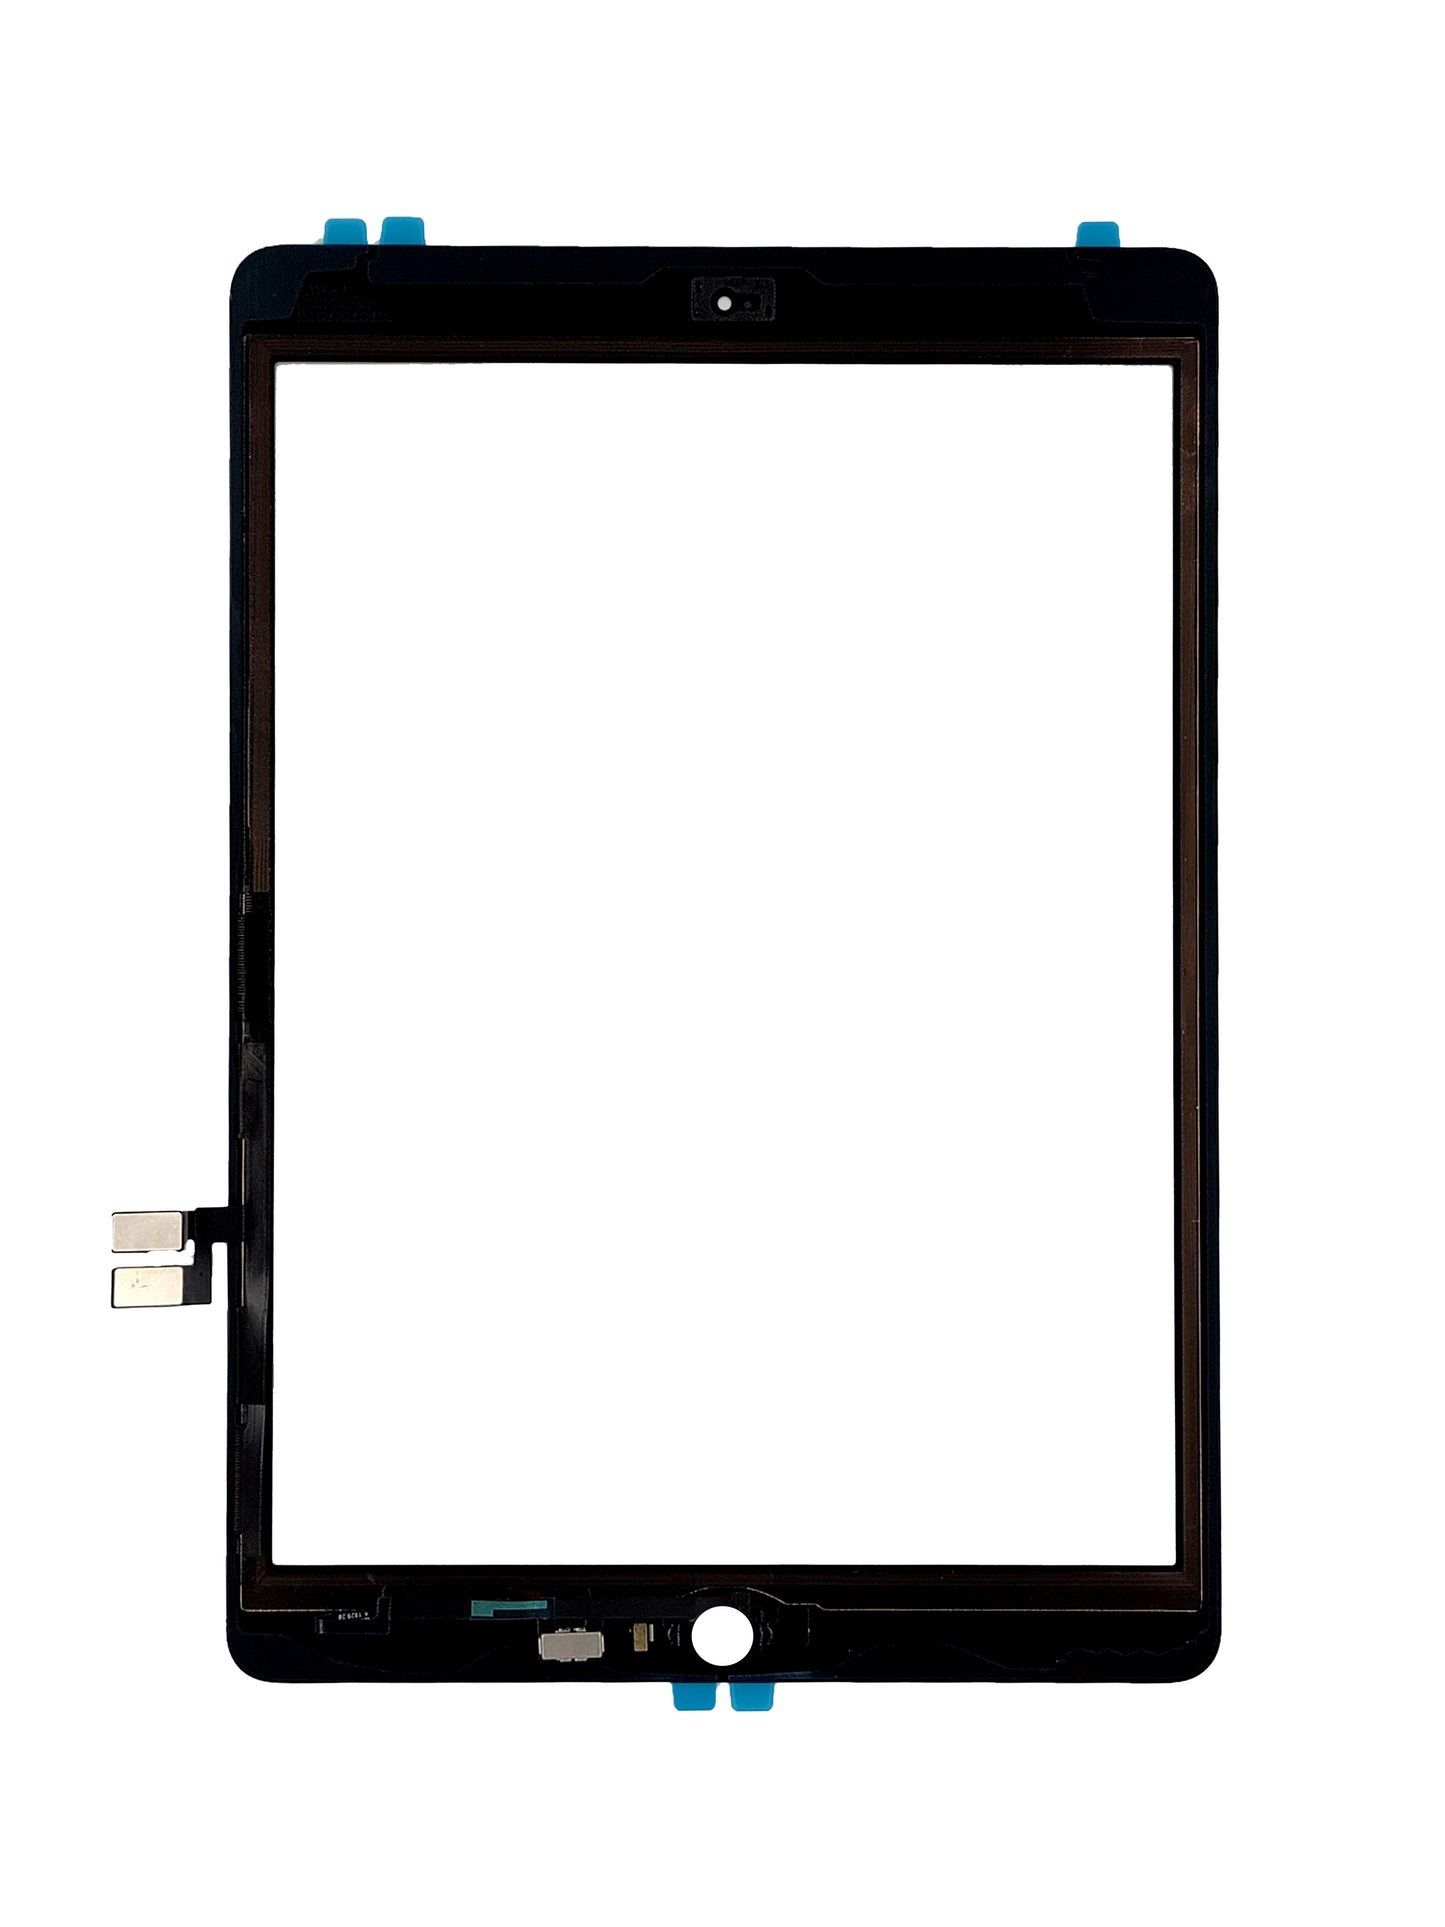 iPad 7 / iPad 8 / iPad 9 Digitizer (Premium) (Black)